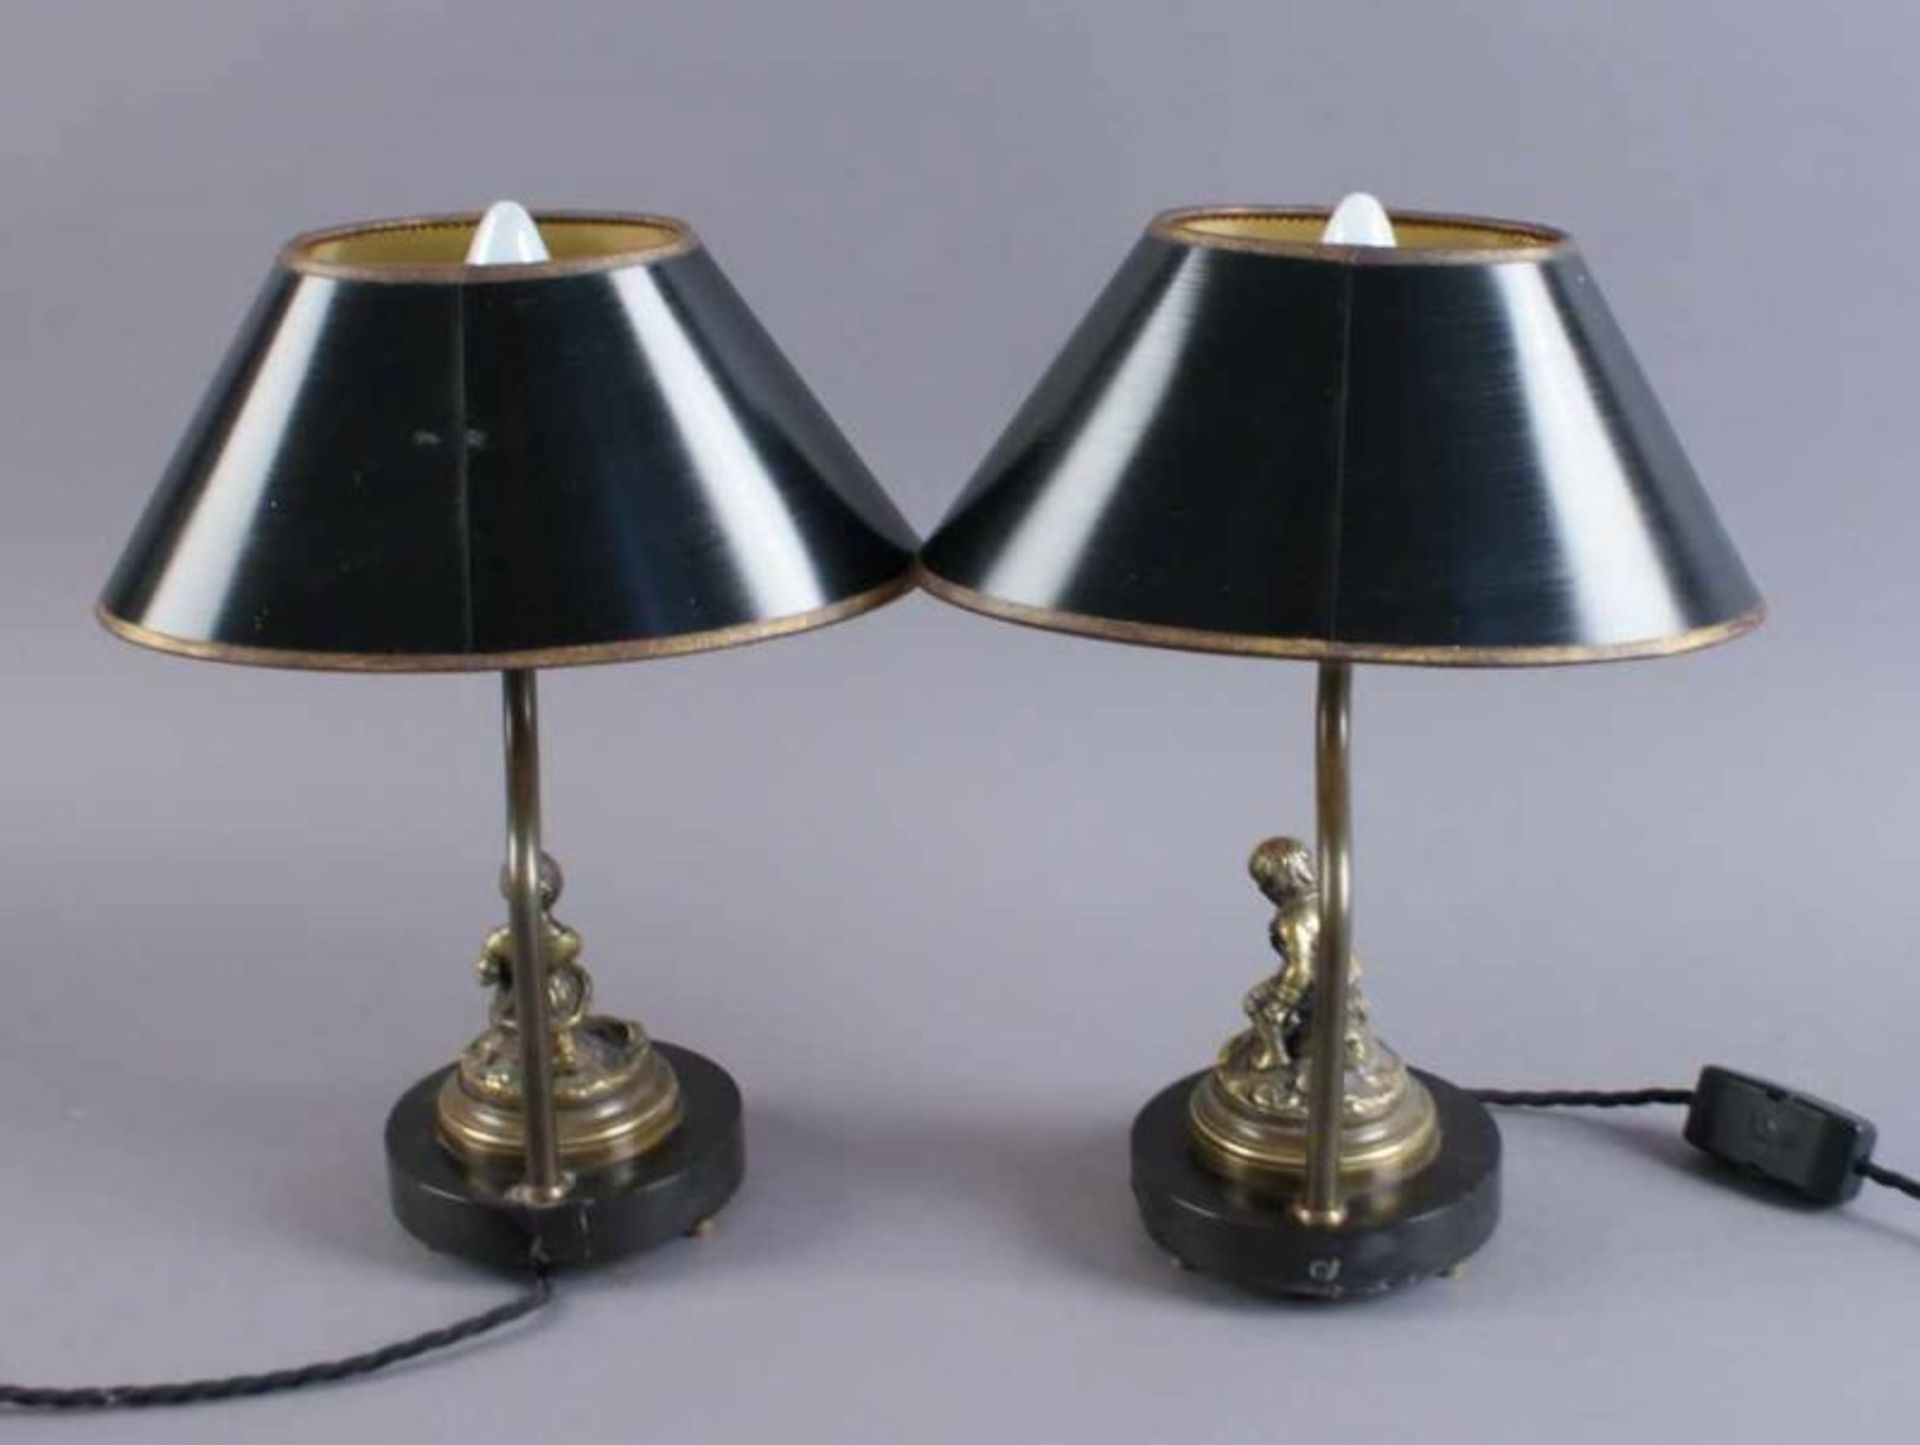 Zwei liebliche Lampen mit Bronzeskulpturen auf Marmorsockel, 19. JH, beschädigt, H je 30 cm 20. - Bild 6 aus 6